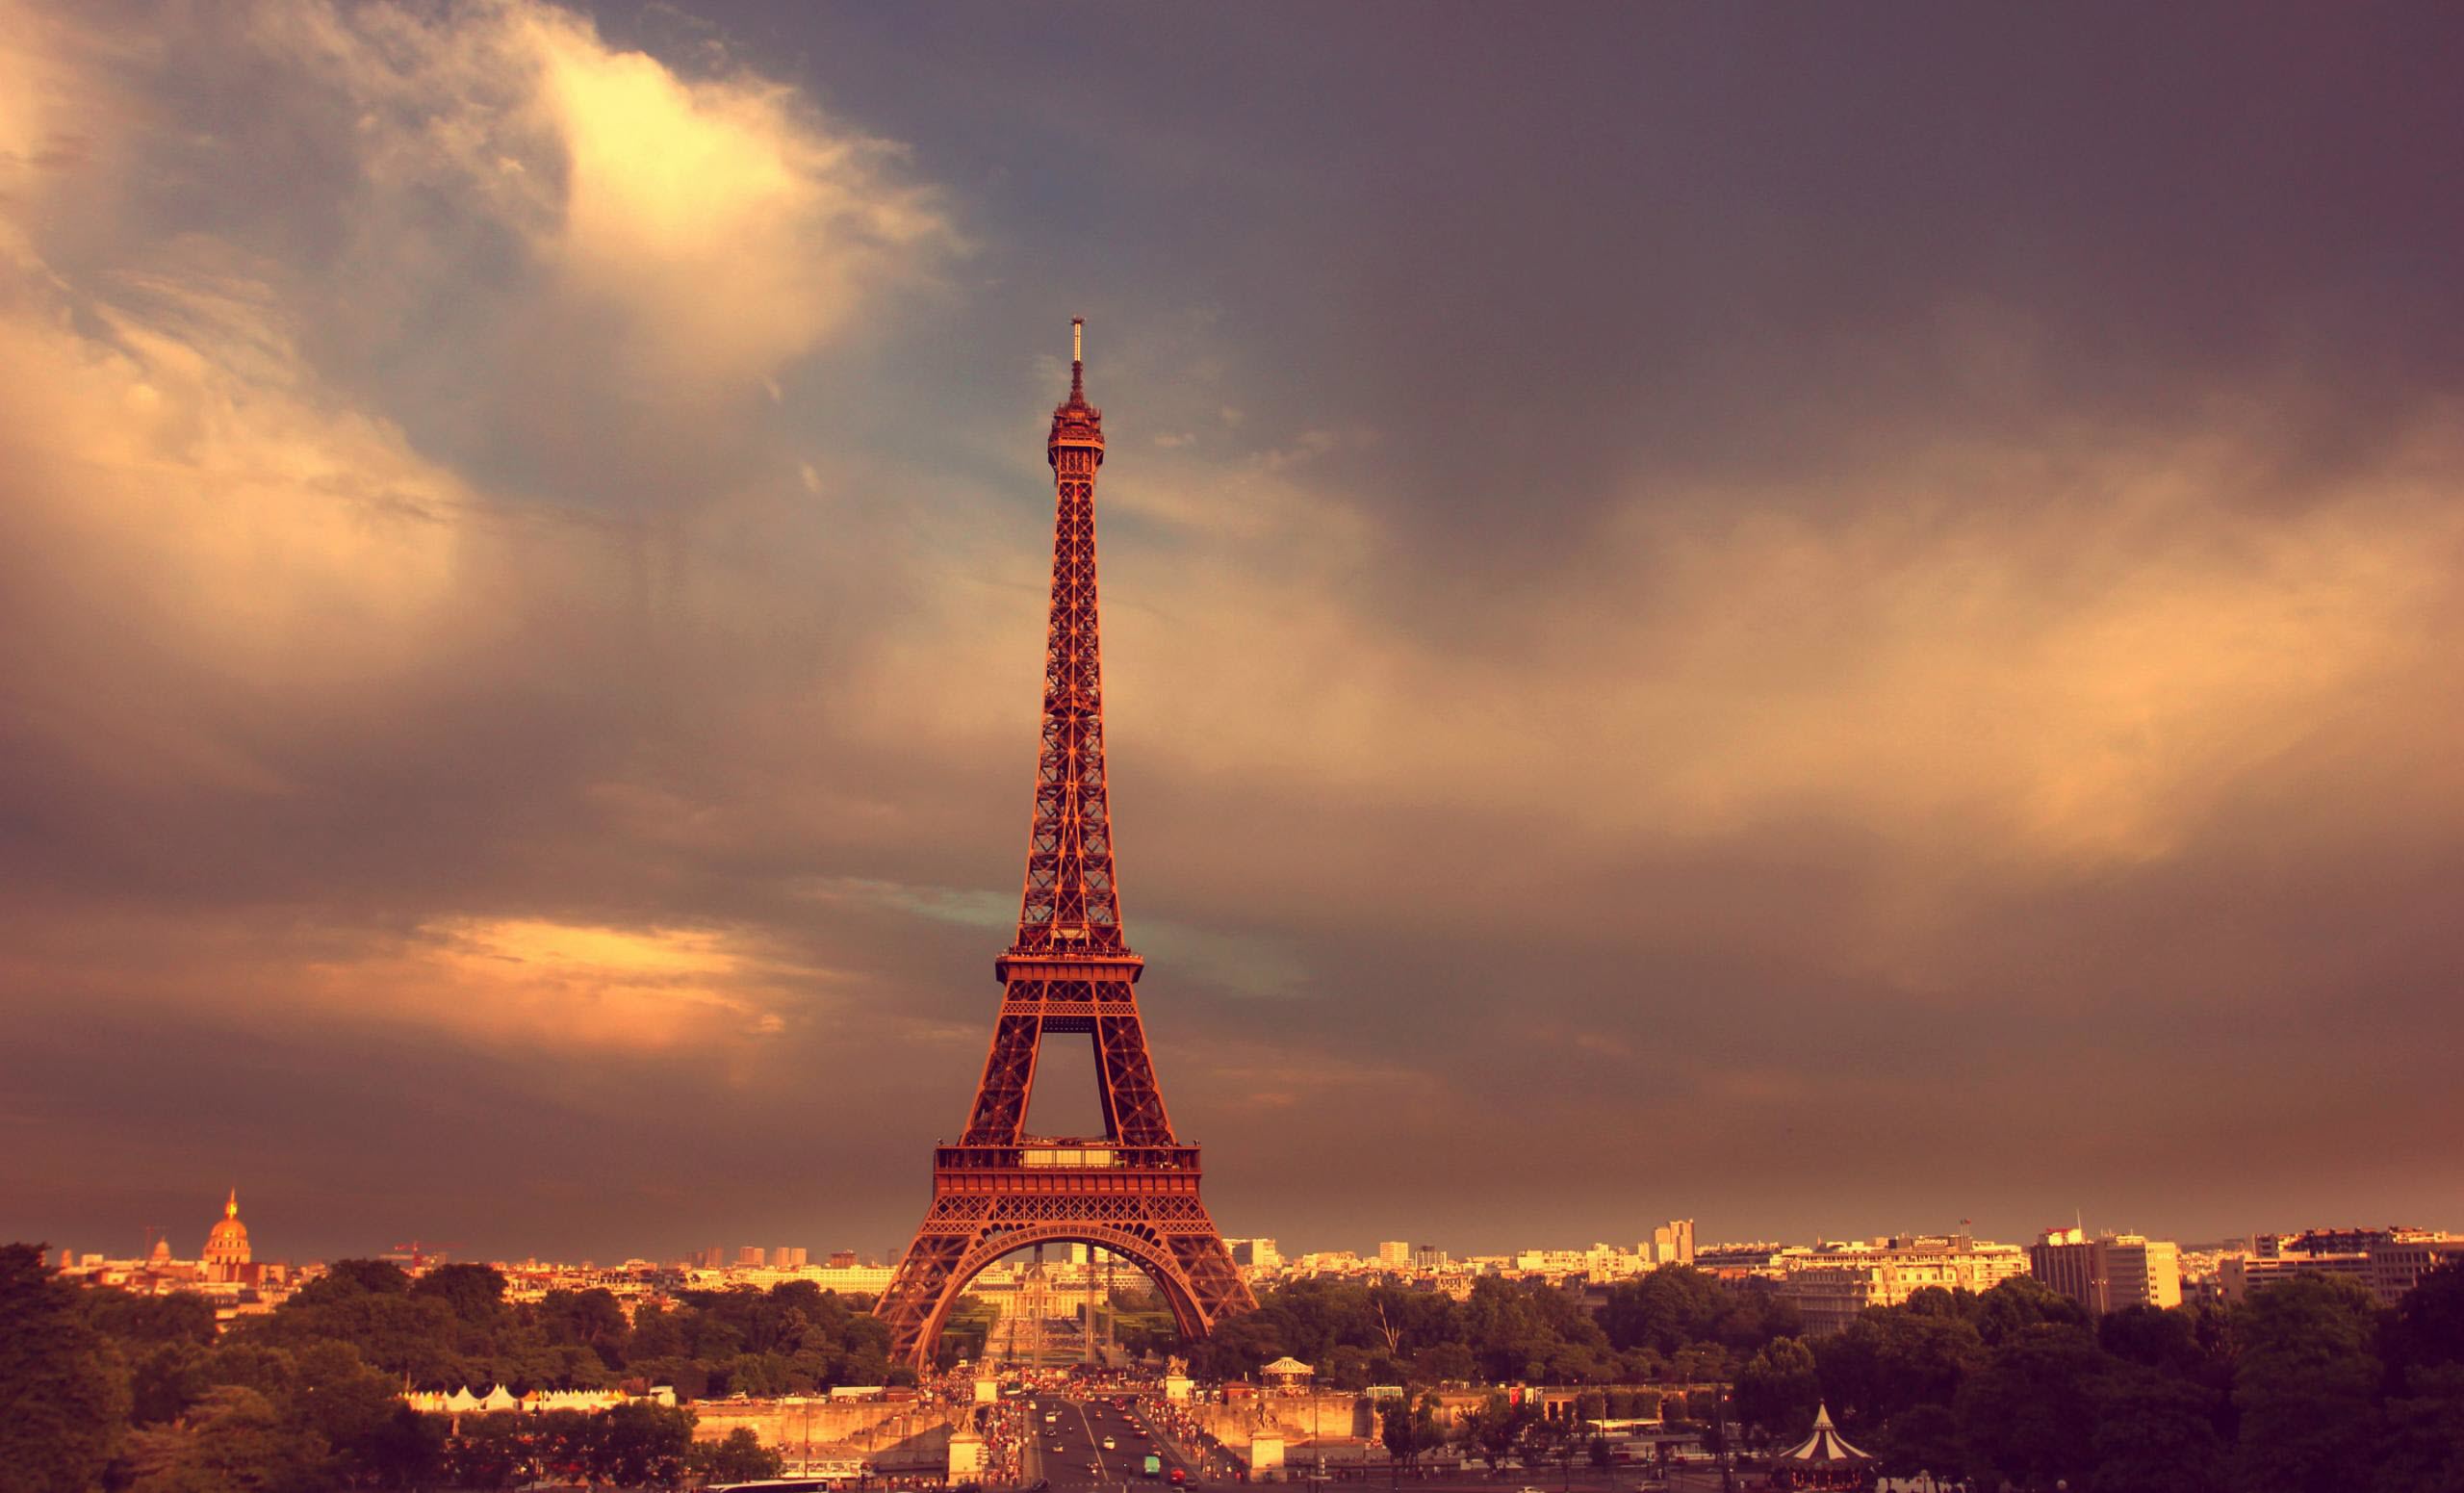 Background tháp Eiffel tuyệt đẹp nhất cho thiết kế